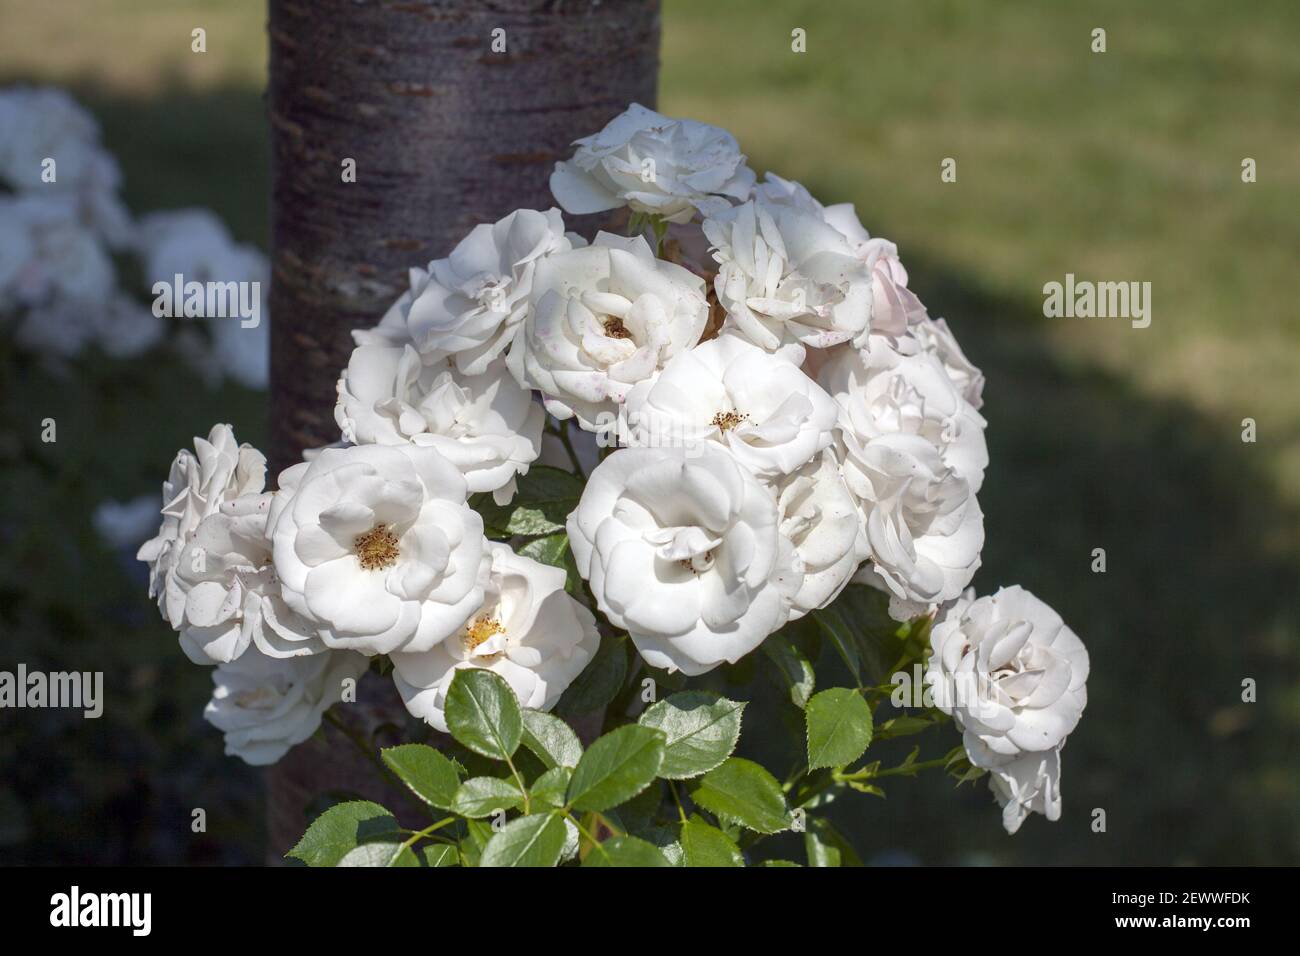 Un bel cespuglio di rose selvatiche con fiori perfettamente bianchi, in parte bagnati dal sole e in parte nascosti all'ombra di un albero. Foto Stock